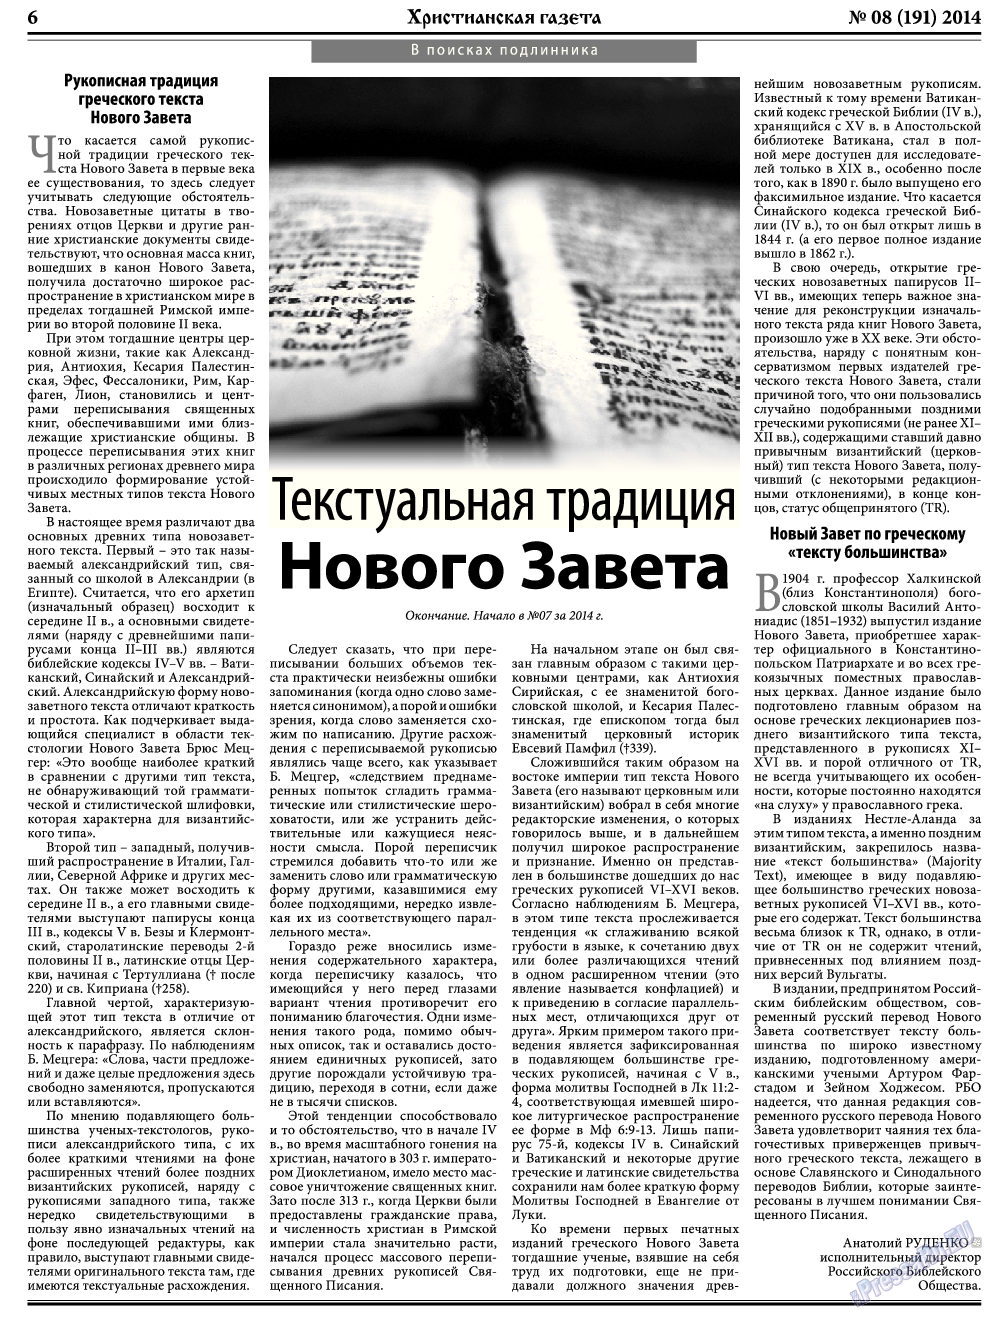 Христианская газета, газета. 2014 №8 стр.6